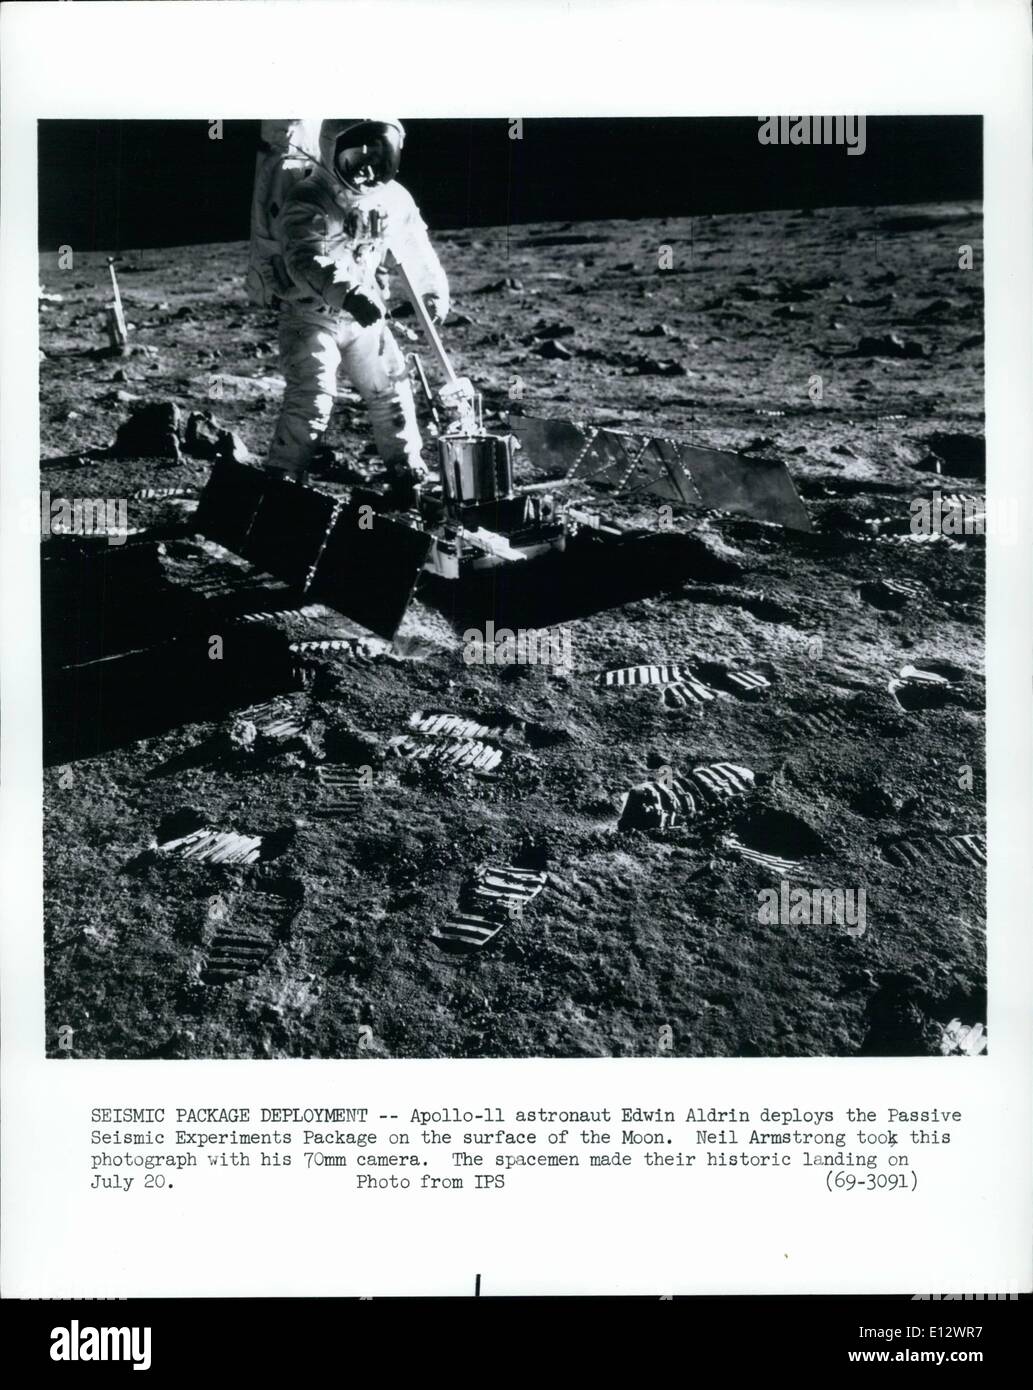 Febbraio 26, 2012 - Pacchetto sismico Deployment - Apollo-11 astronauta Edwin Aldrin distribuisce la sismica passiva pacchetto di esperimenti sulla superficie della luna. Neil Armstrong ha preso questa fotografia con la sua 70mm Fotocamera. Lo spazio reso loro storico sbarco sulla luglio 20. Foto Stock